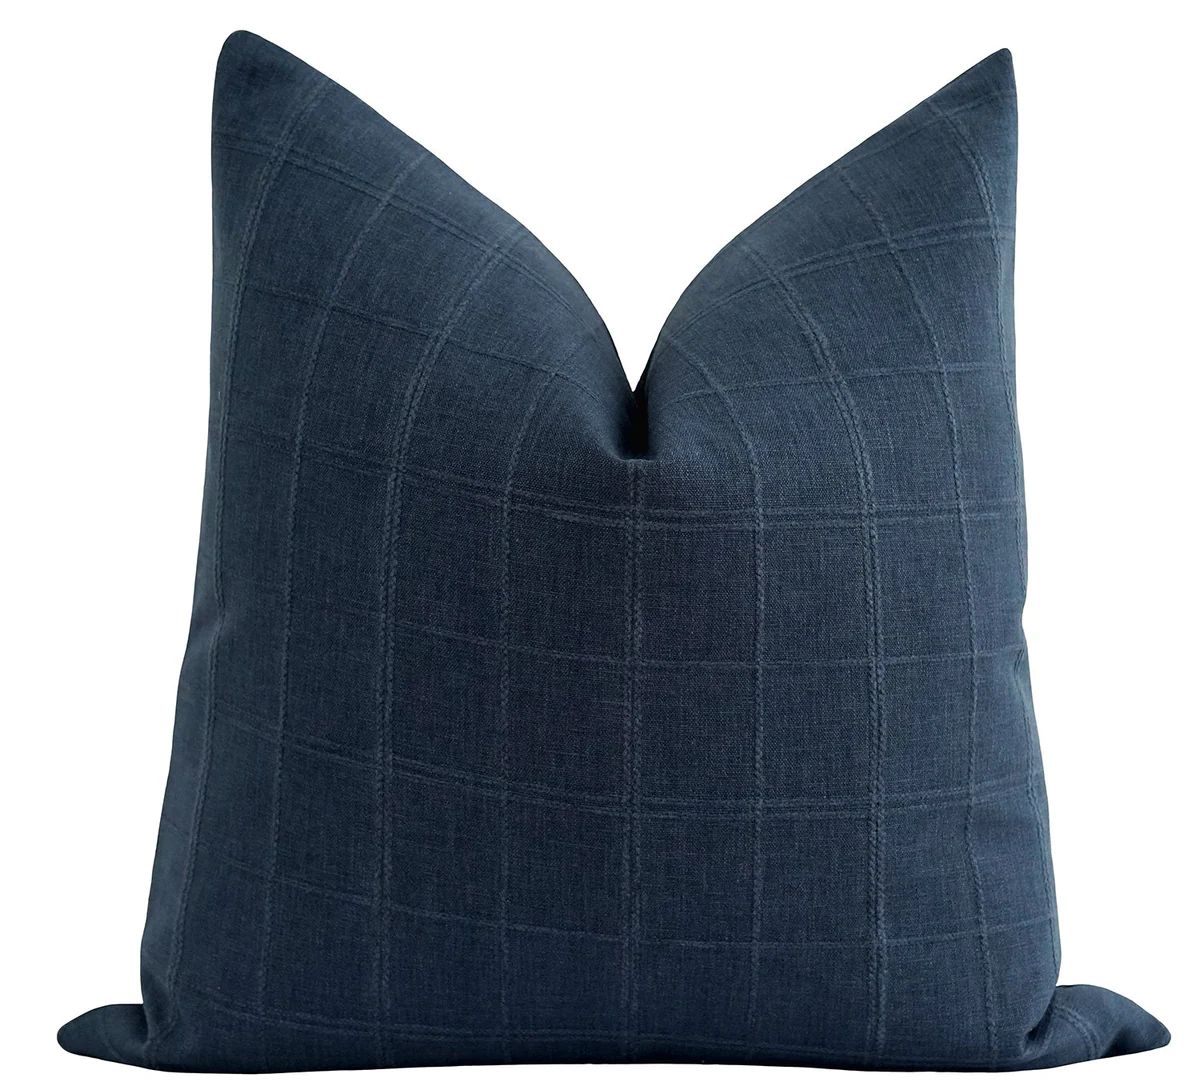 Beaufort Navy Blue Plaid Pillow | Land of Pillows